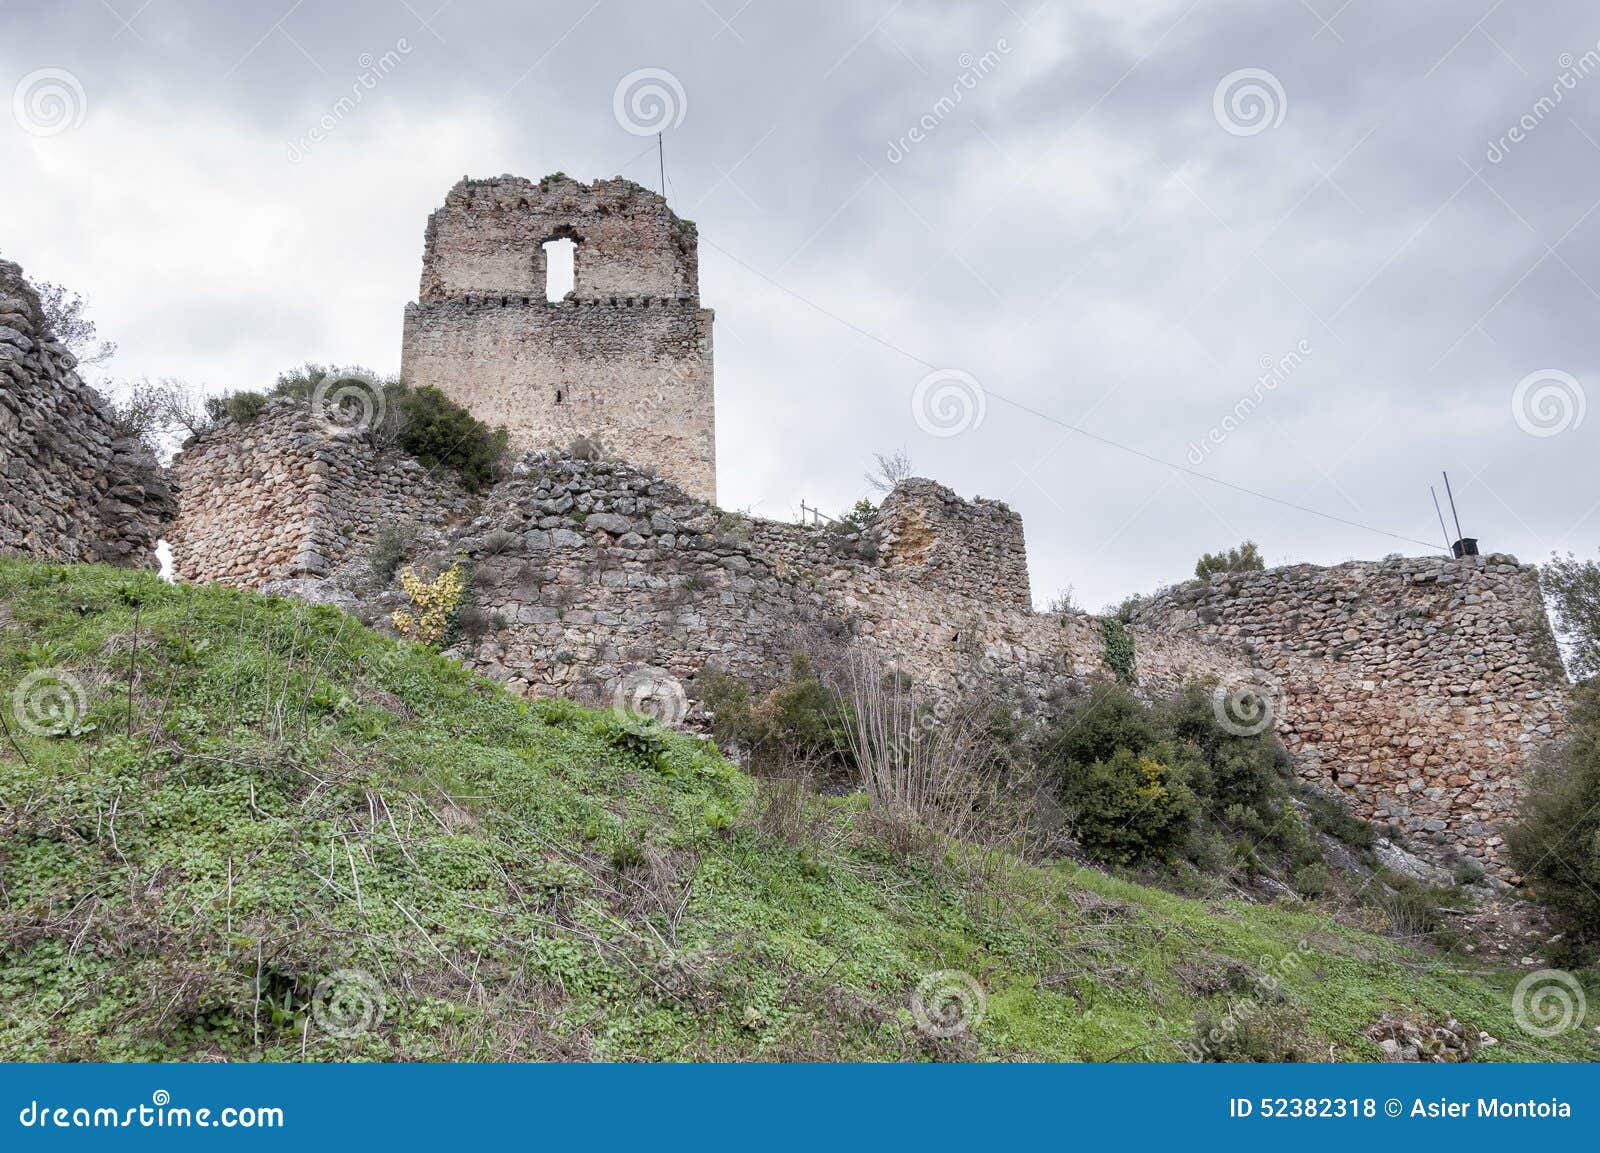 ocio castle ruins